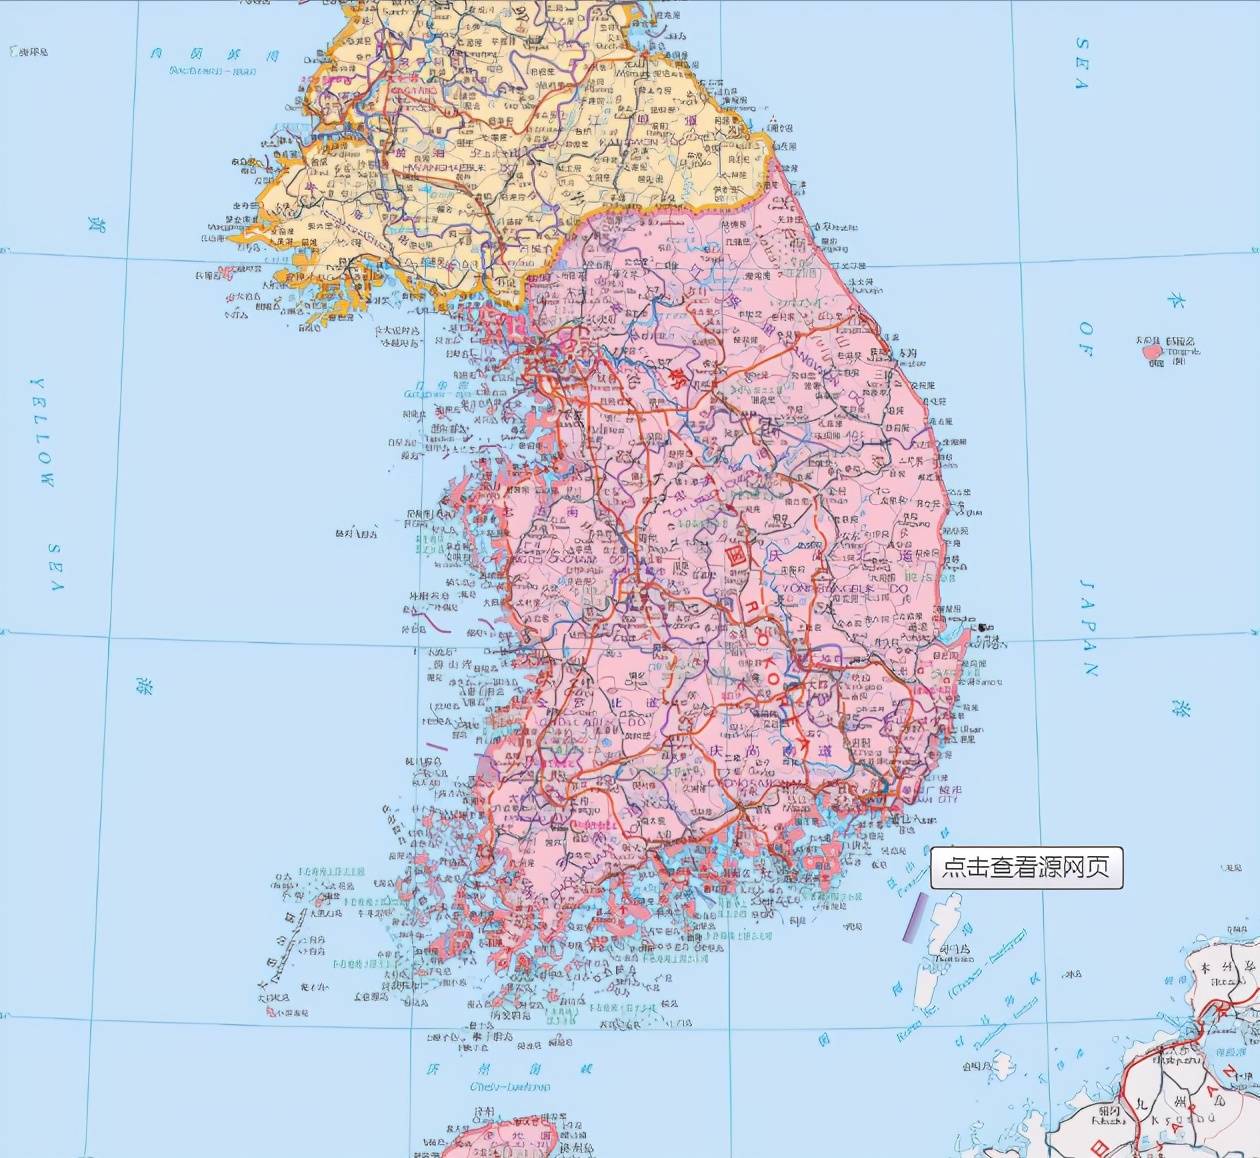 韩国,地理环境虽然尴尬,但是唯一的通过自身成为发达国家